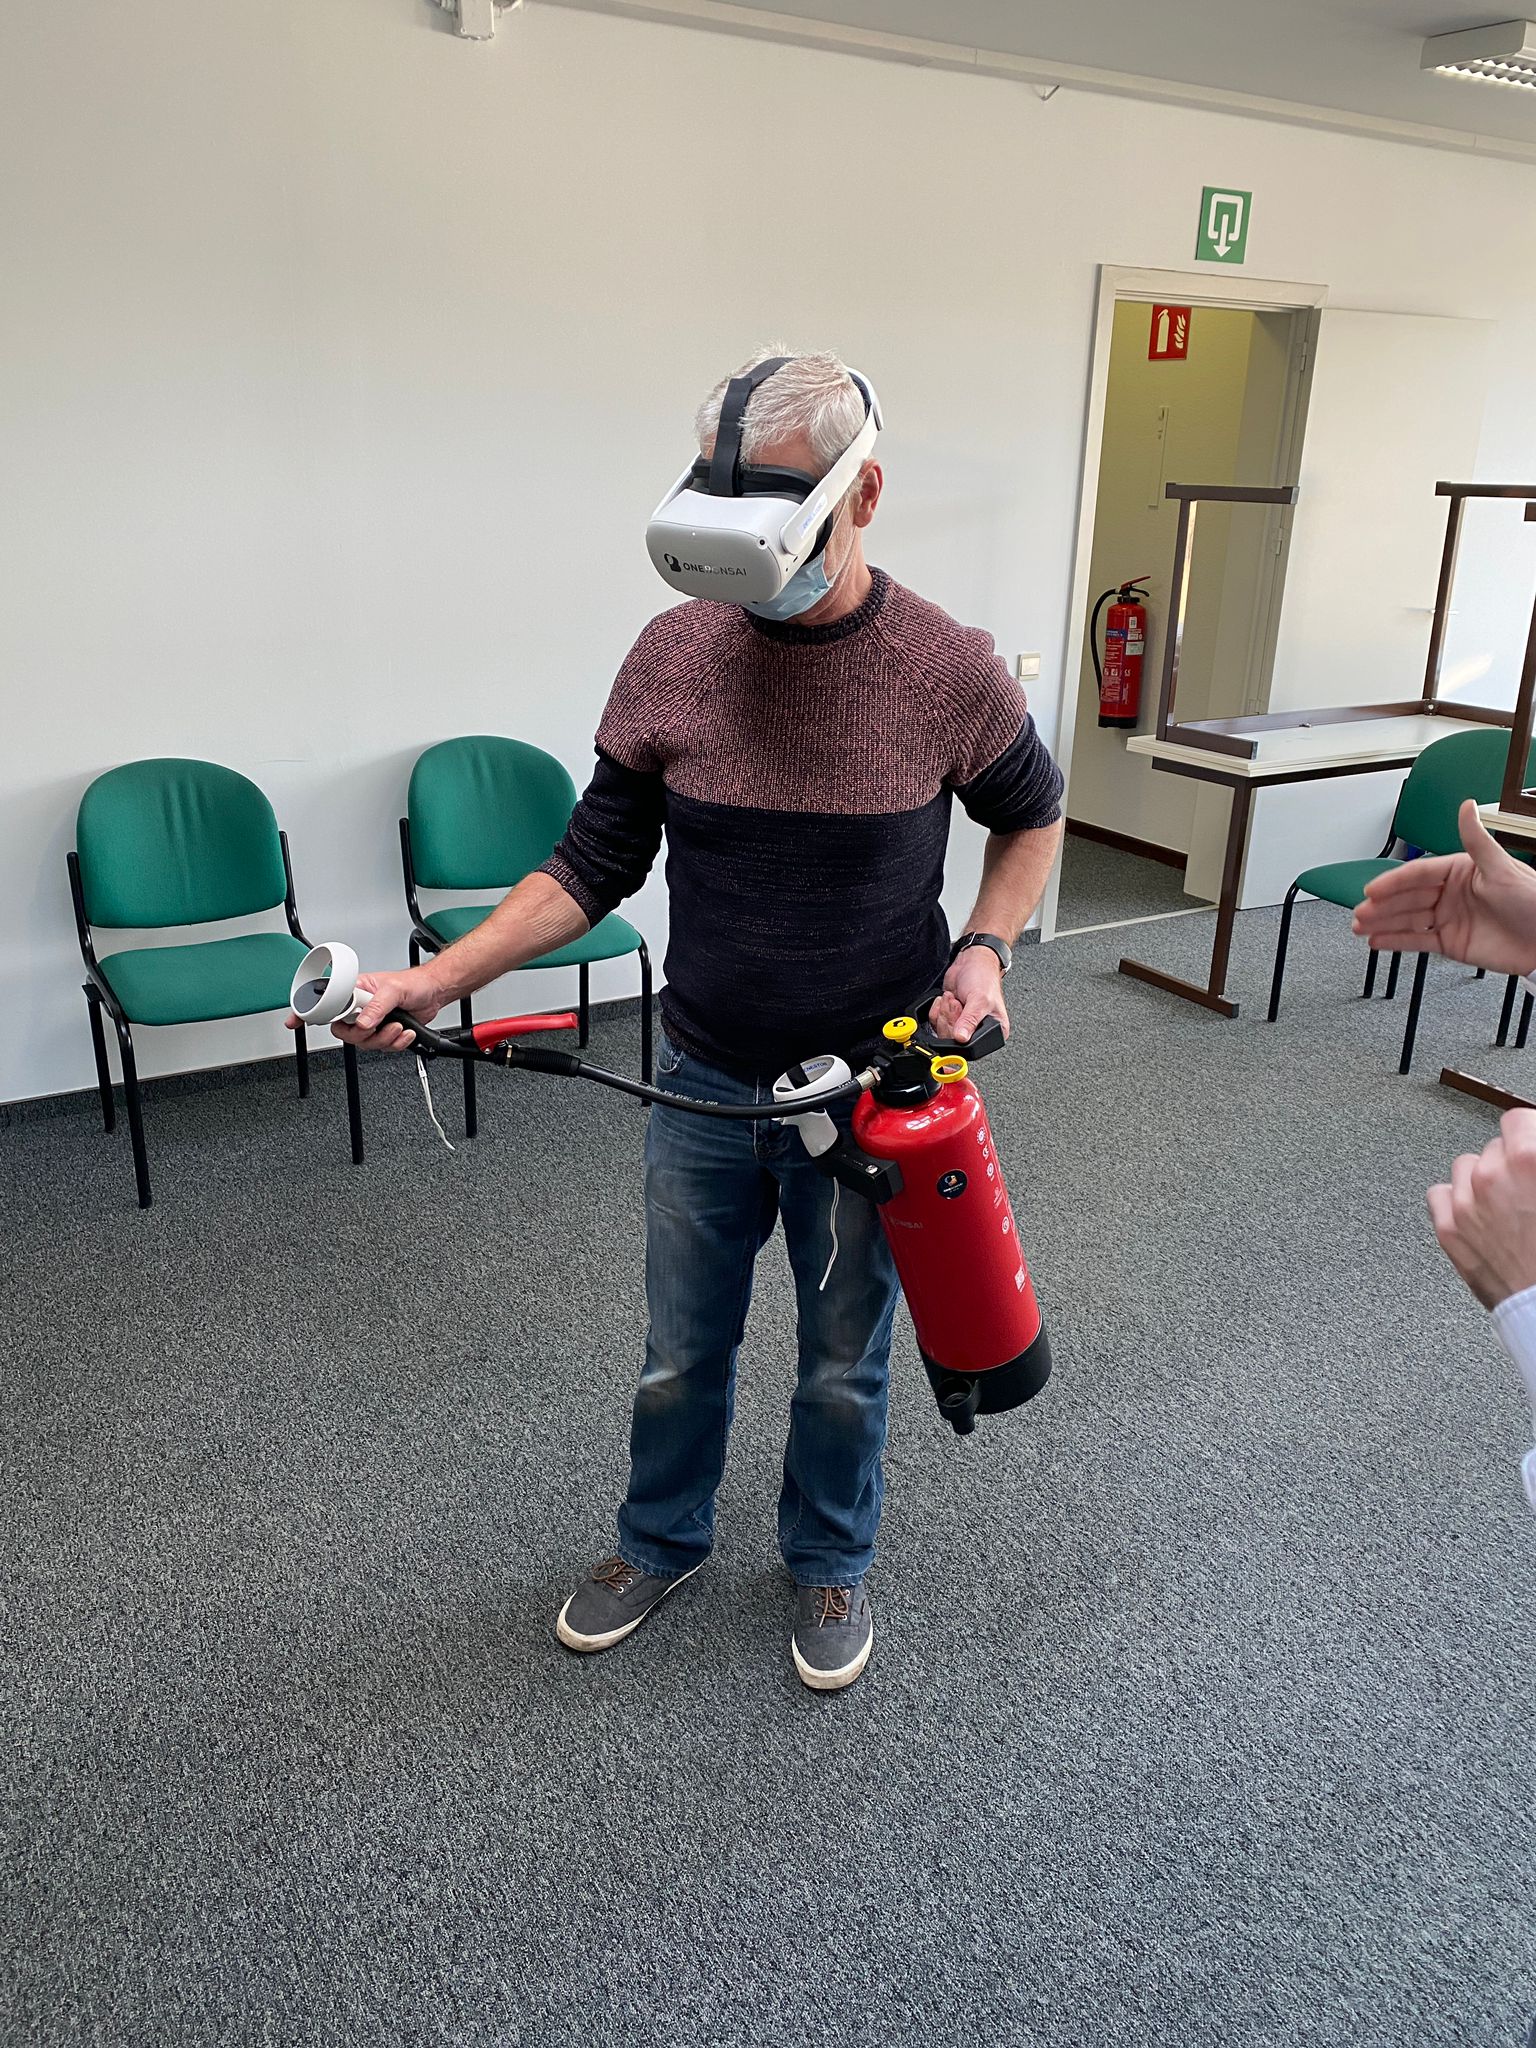 Op zoek naar een virtuele brandopleiding met een VR-bril? Bij De Nestor natuurlijk.